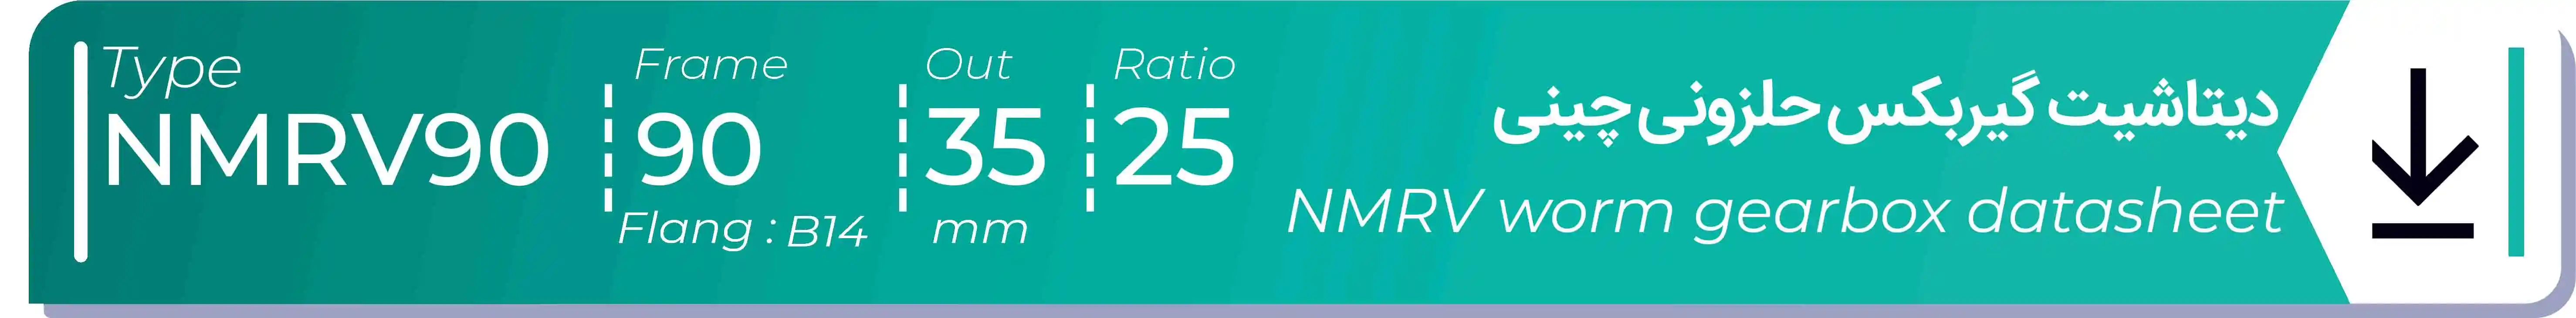  دیتاشیت و مشخصات فنی گیربکس حلزونی چینی   NMRV90  -  با خروجی 35- میلی متر و نسبت25 و فریم 90